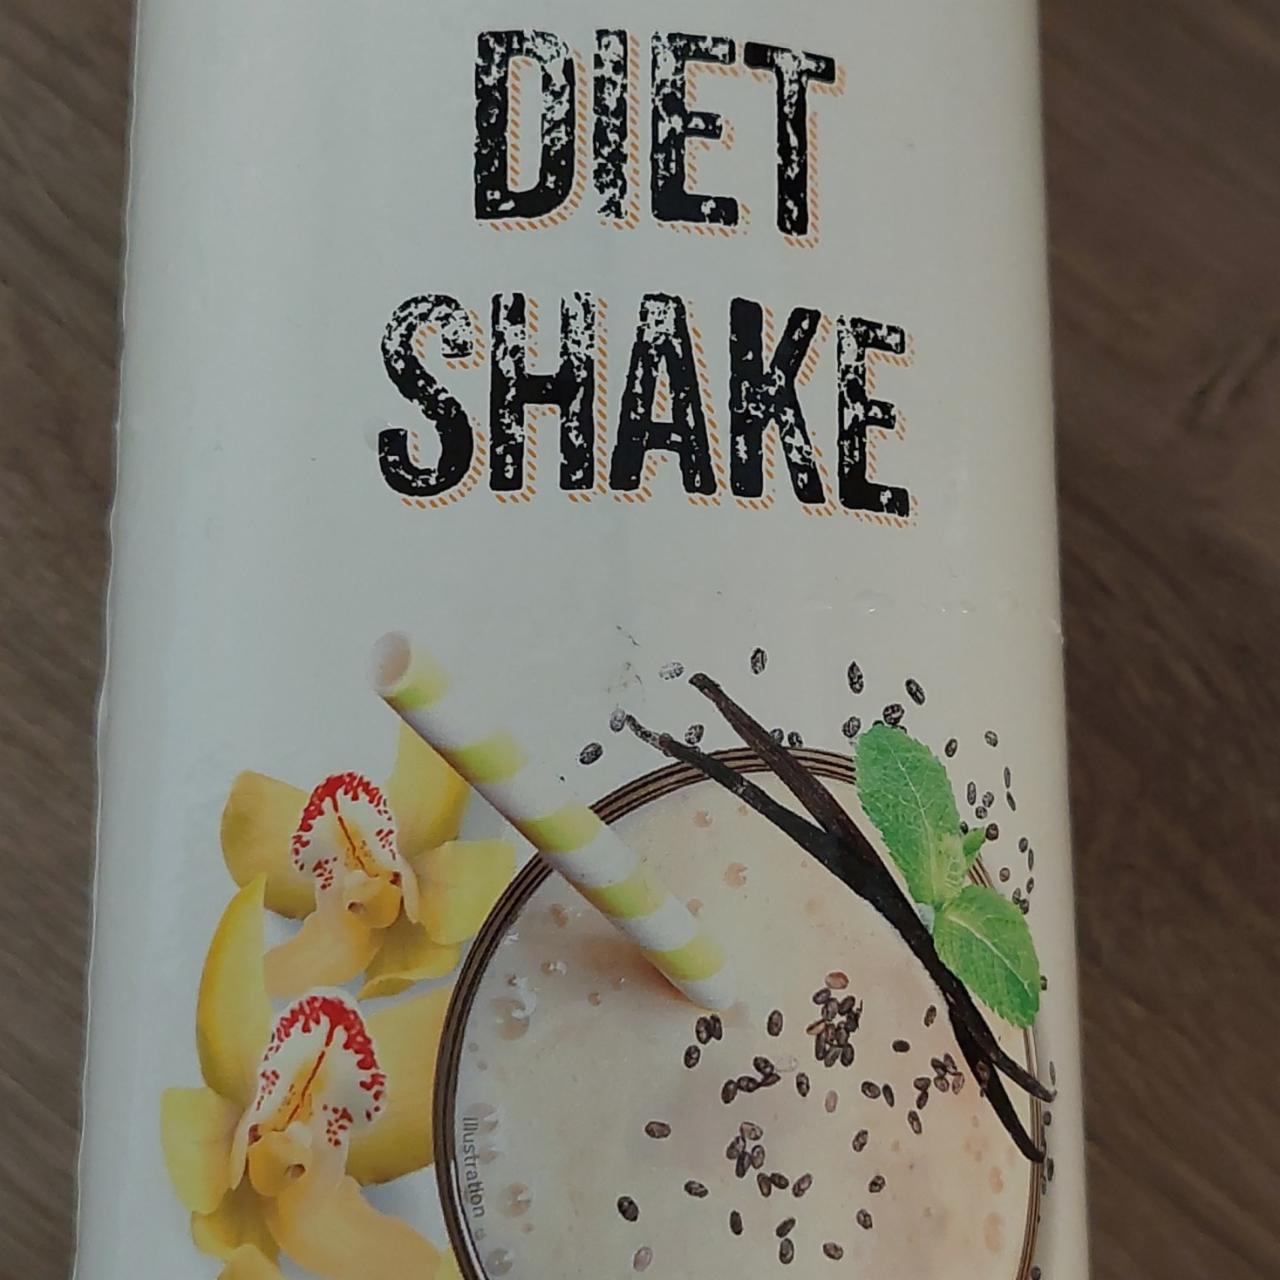 Fotografie - Diet Shake vanilla ChiaShake